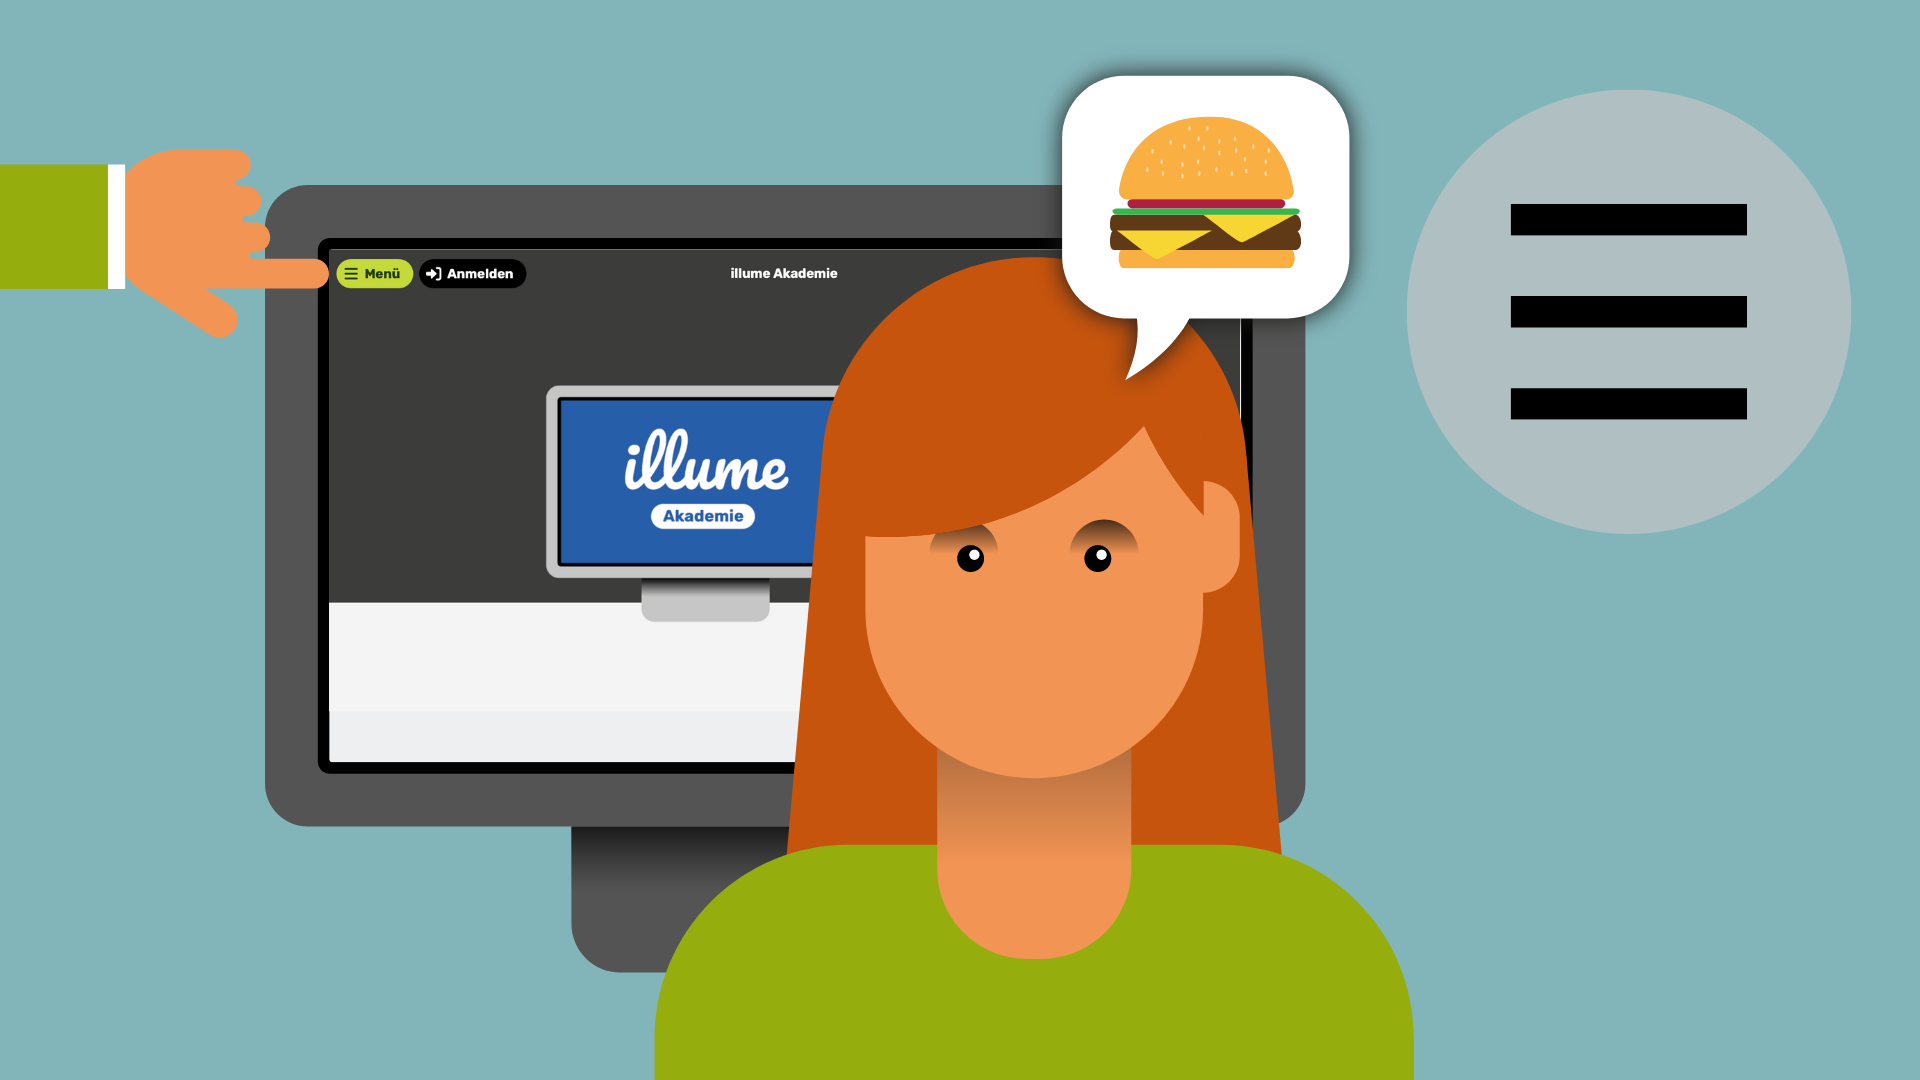 Im Vordergrund eine Frau mit einer Sprechblase. In der Sprechblase ein Hamburger. Im Hintergrund ein Computer mit der ILLUME Akademie. Eine Hand zeigt auf den Menü-Button oben links.